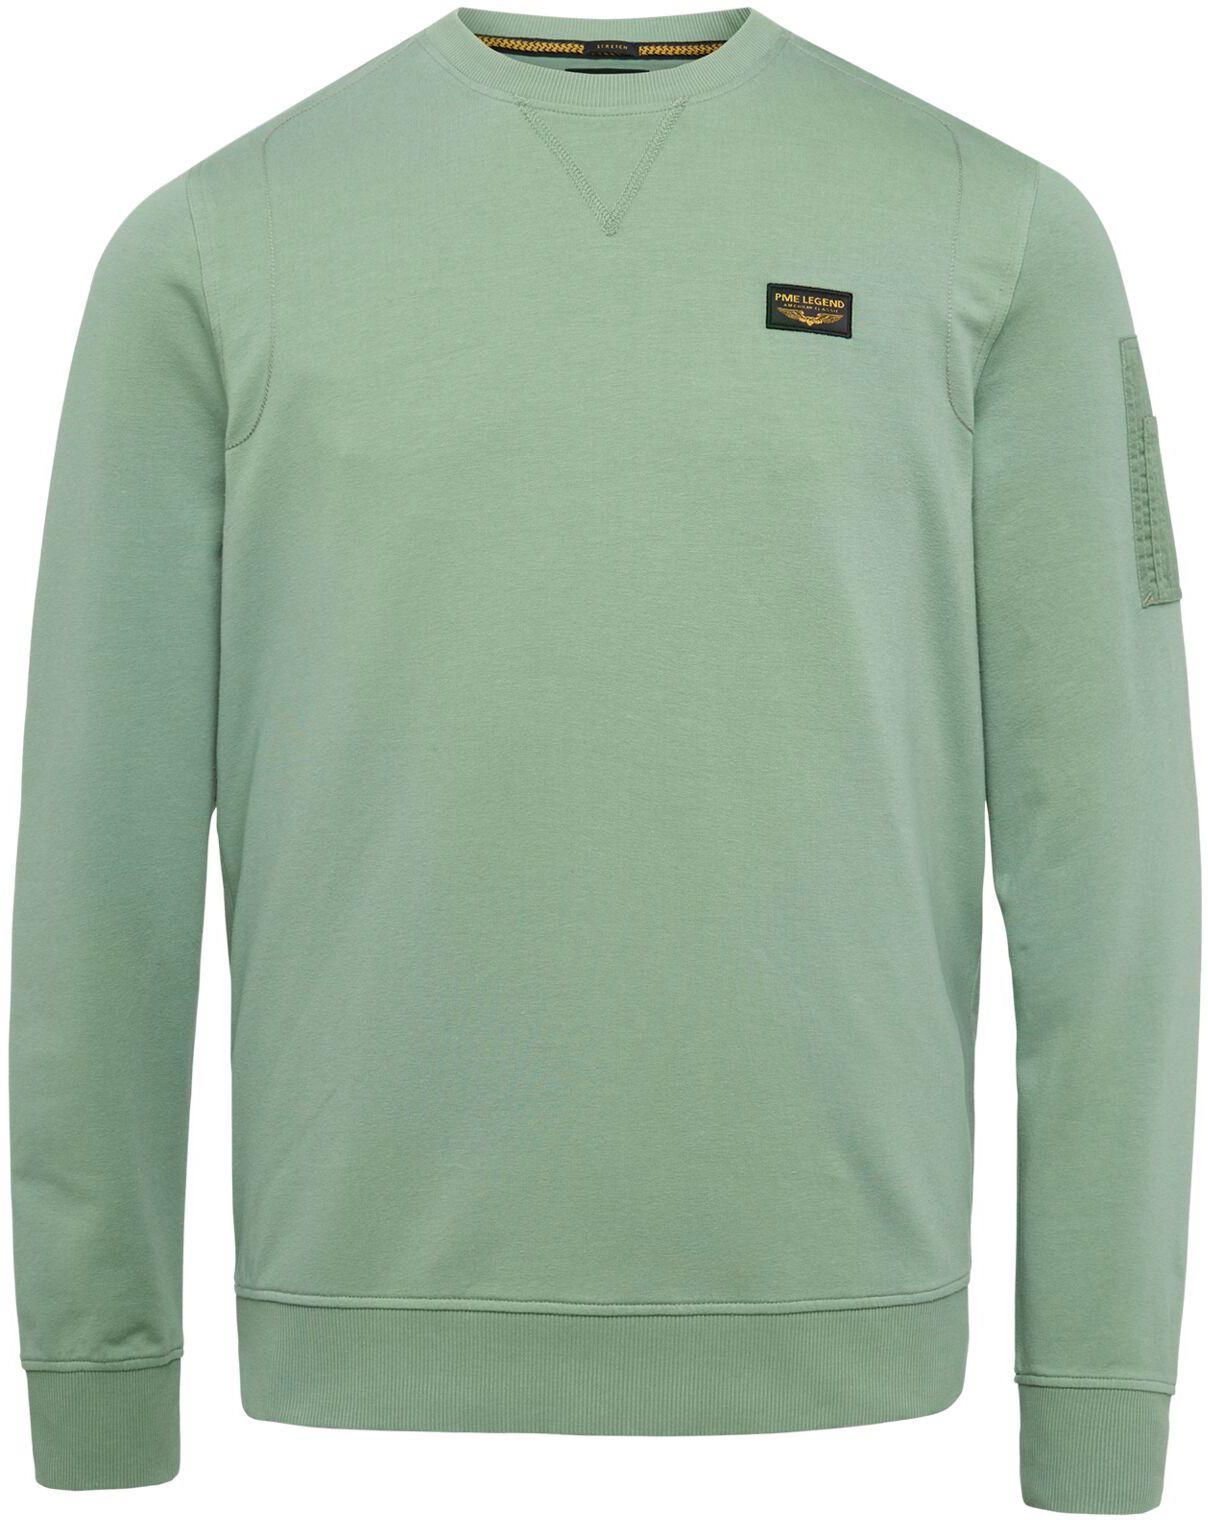 PME Legend Airstrip Sweater Green size L